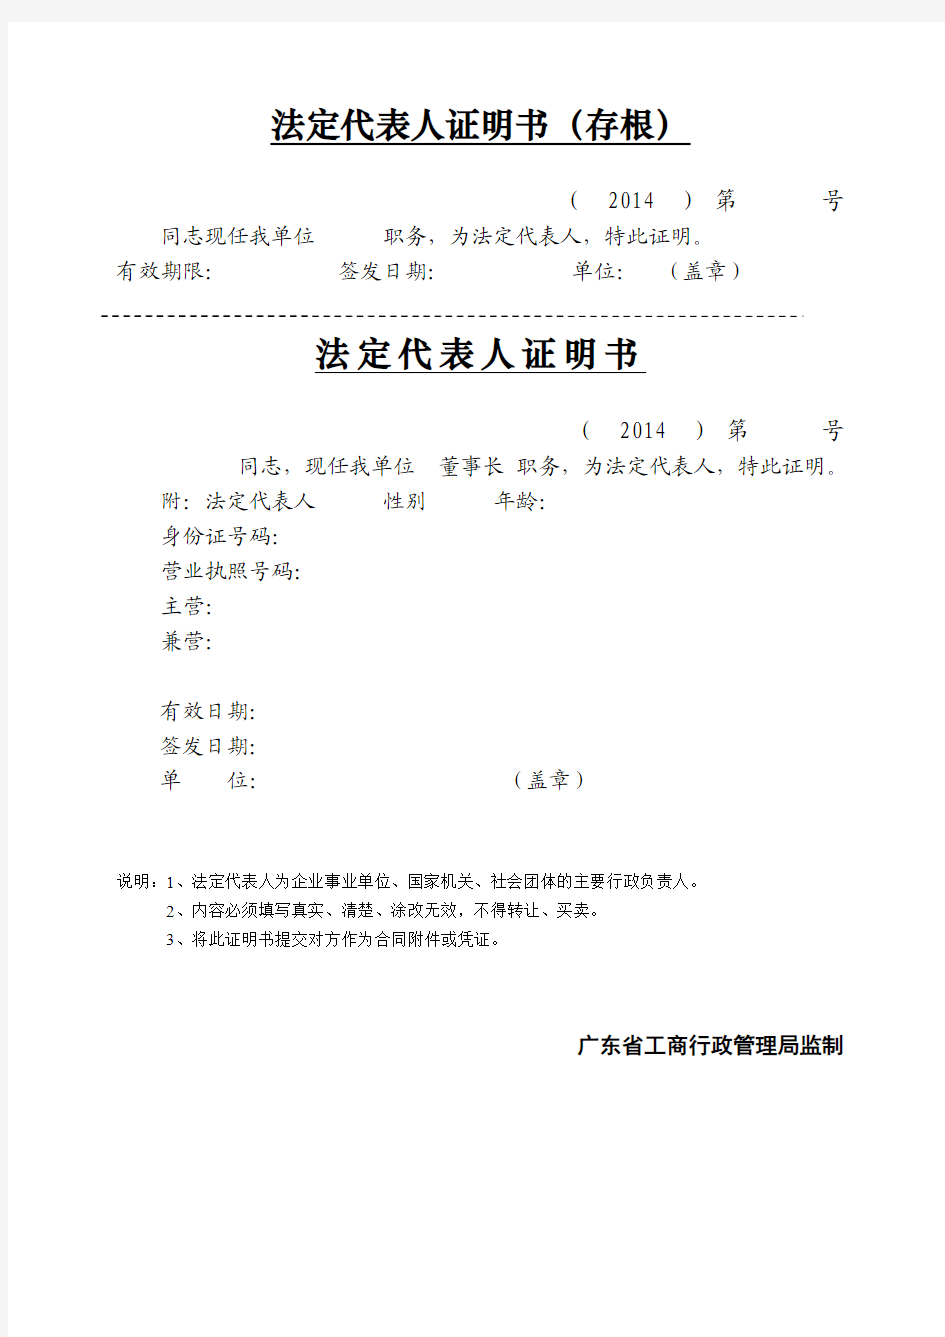 法定代表人证明书 -广东省工商局格式